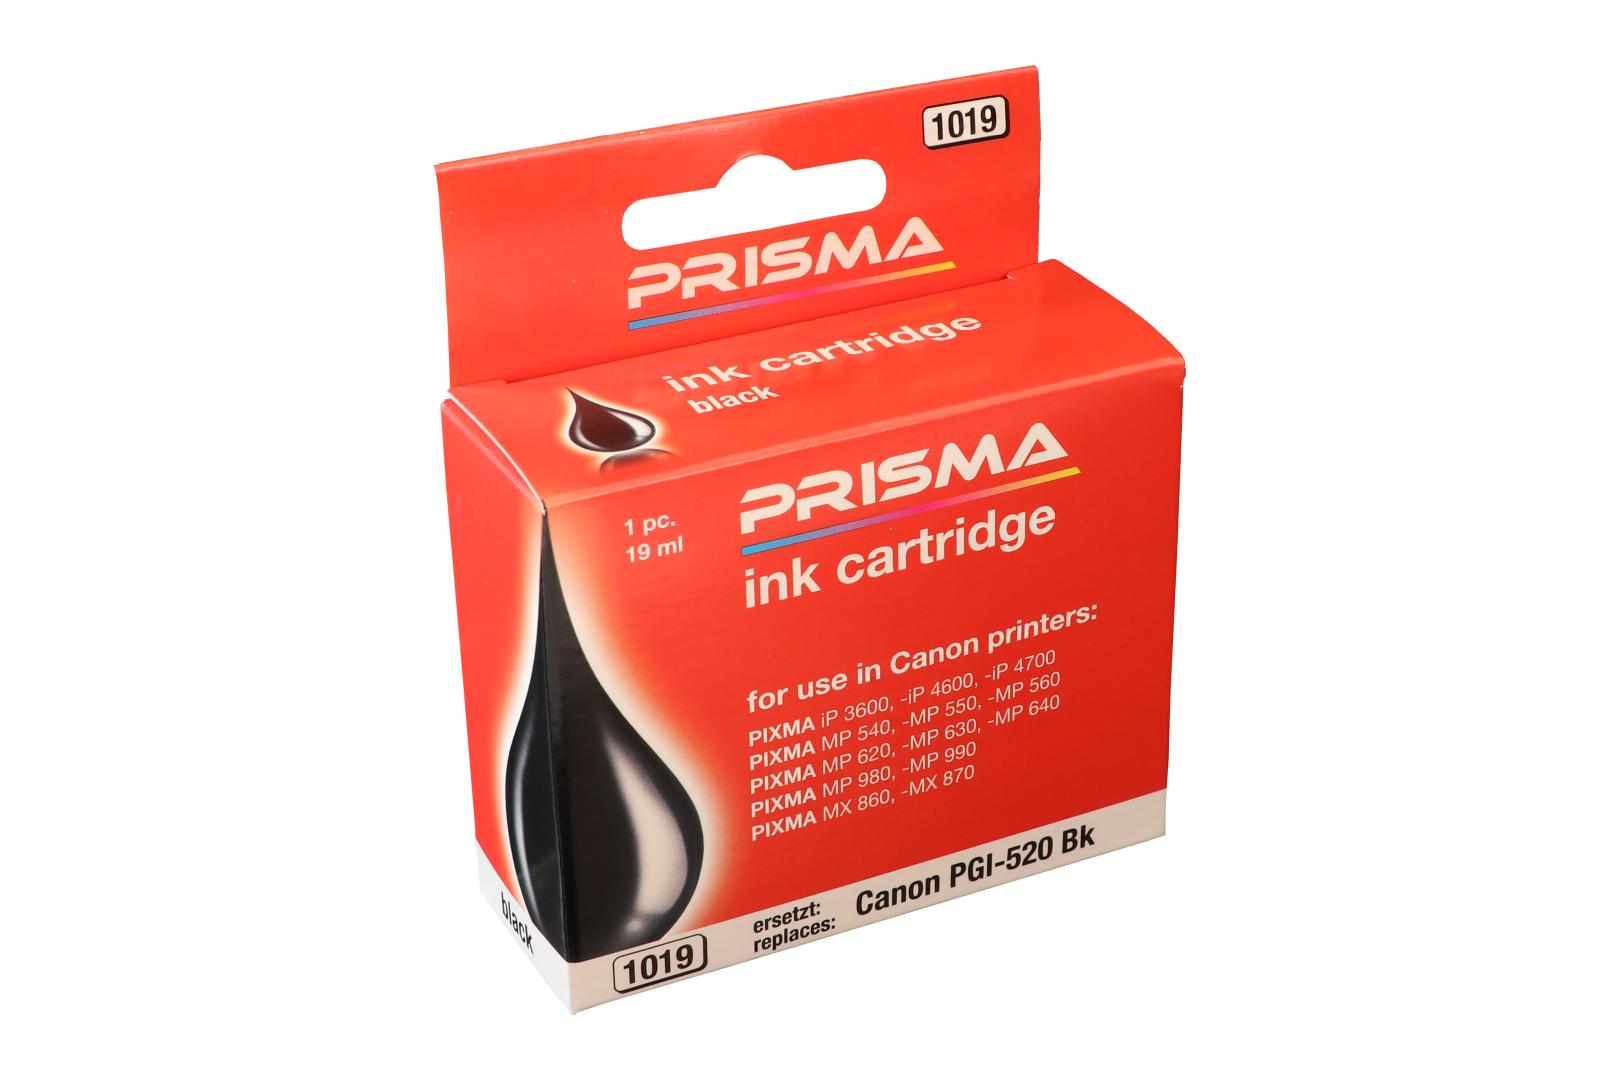 PRISMA 1019 Druckerpatrone für Canon Tintenstrahldrucker, schwarz, 19 ml